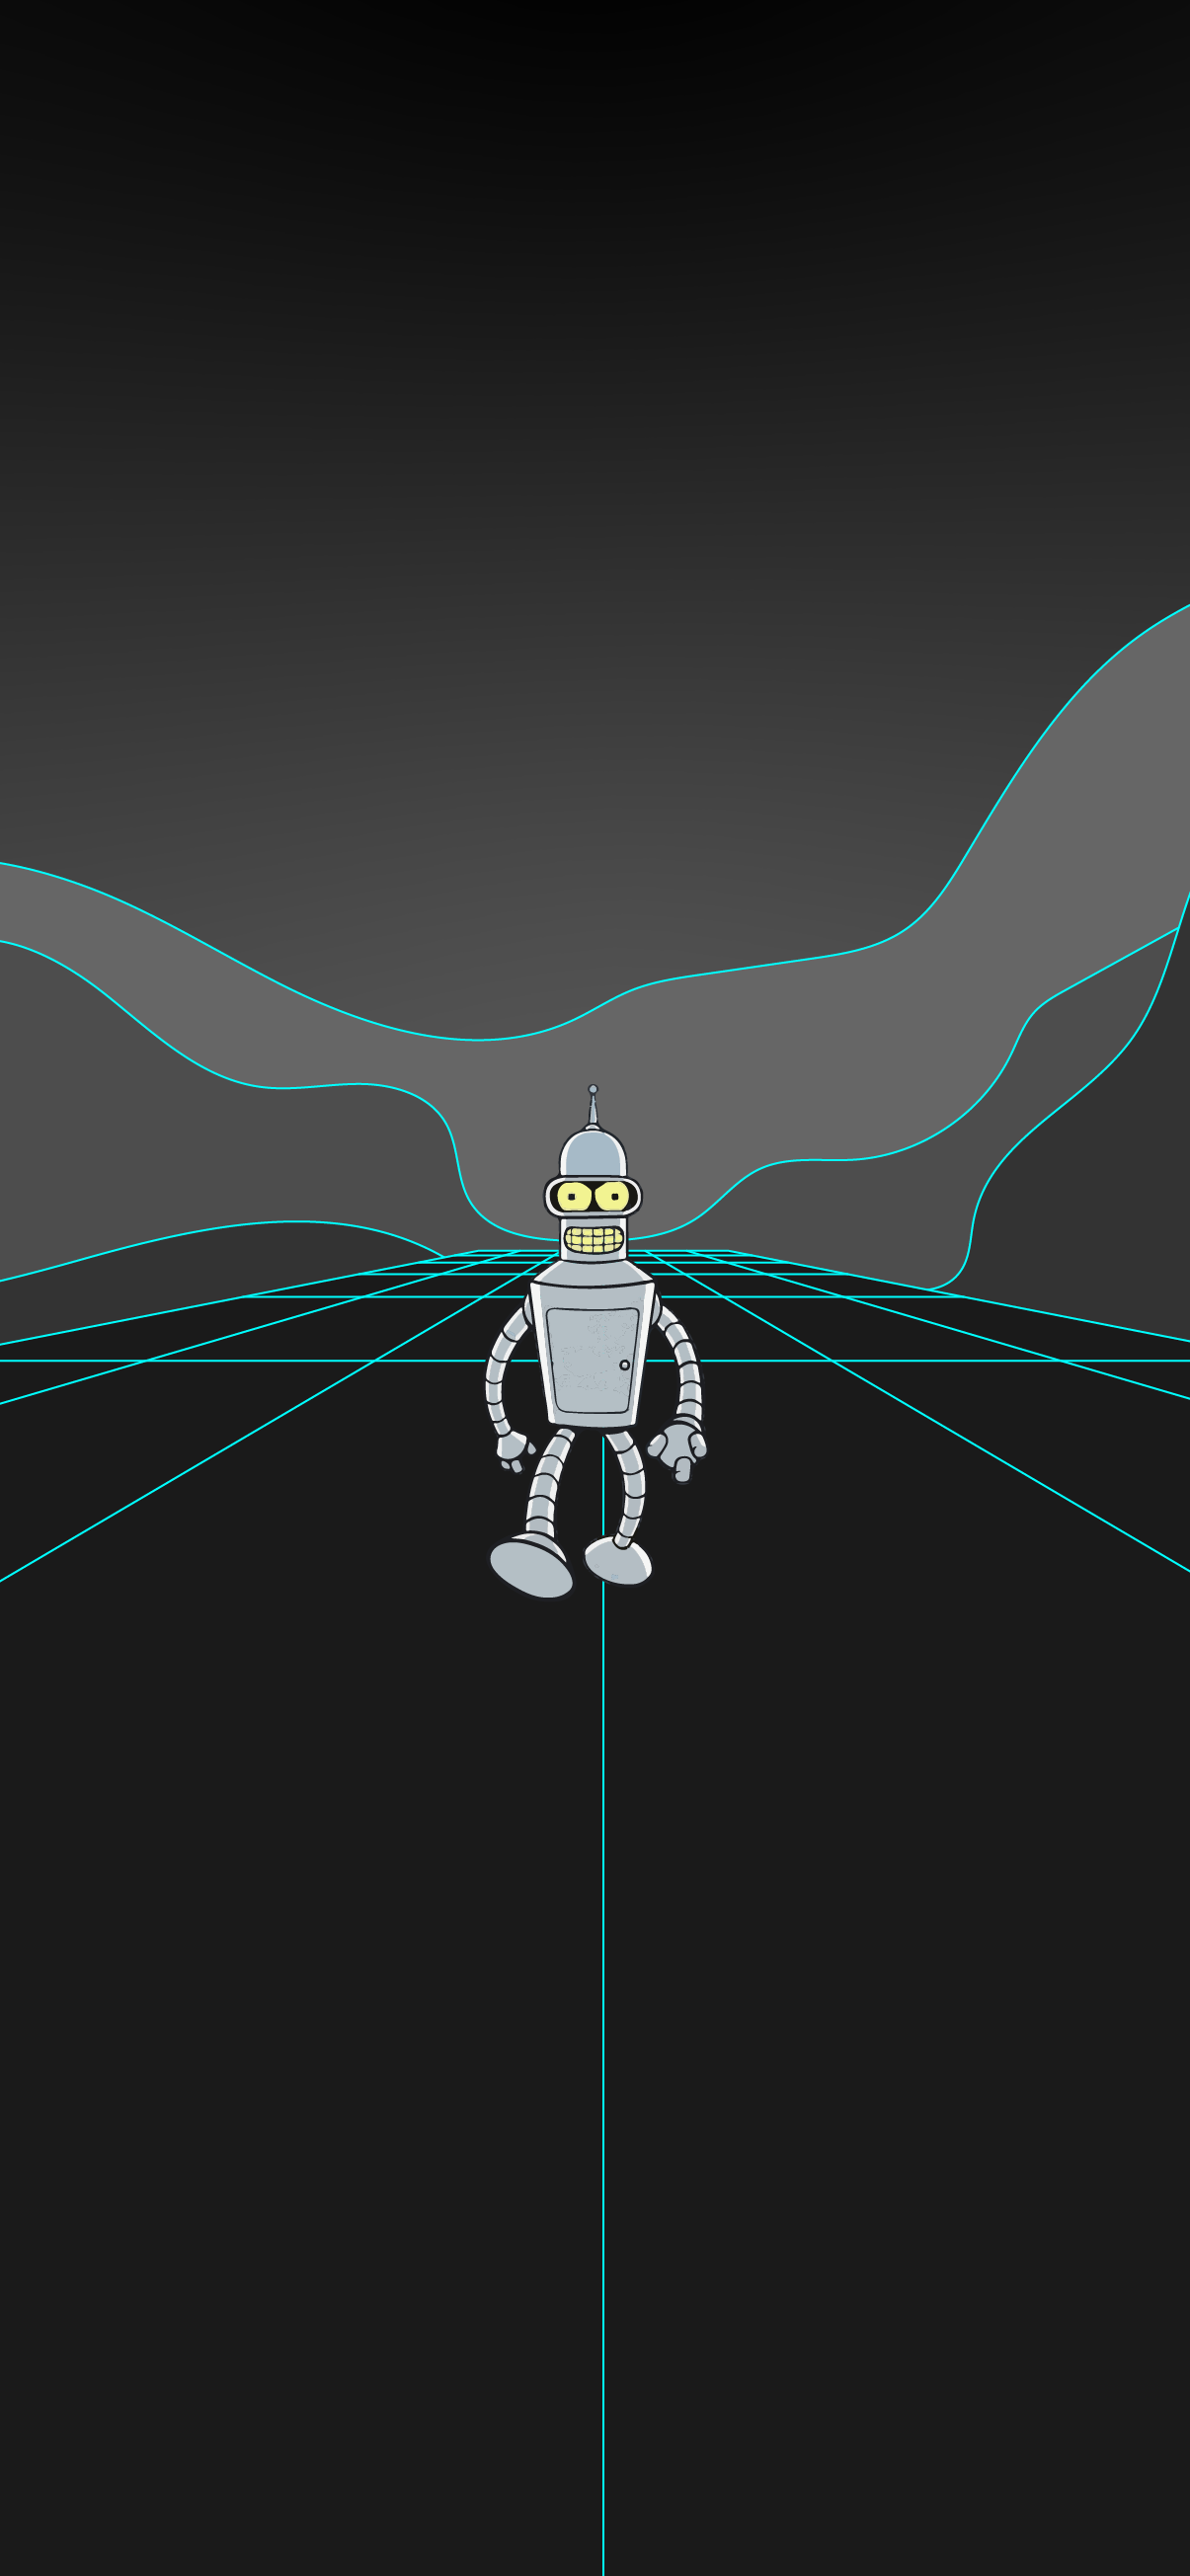 Bender Futurama wallpaper by jackvandewalle  Download on ZEDGE  d3c1